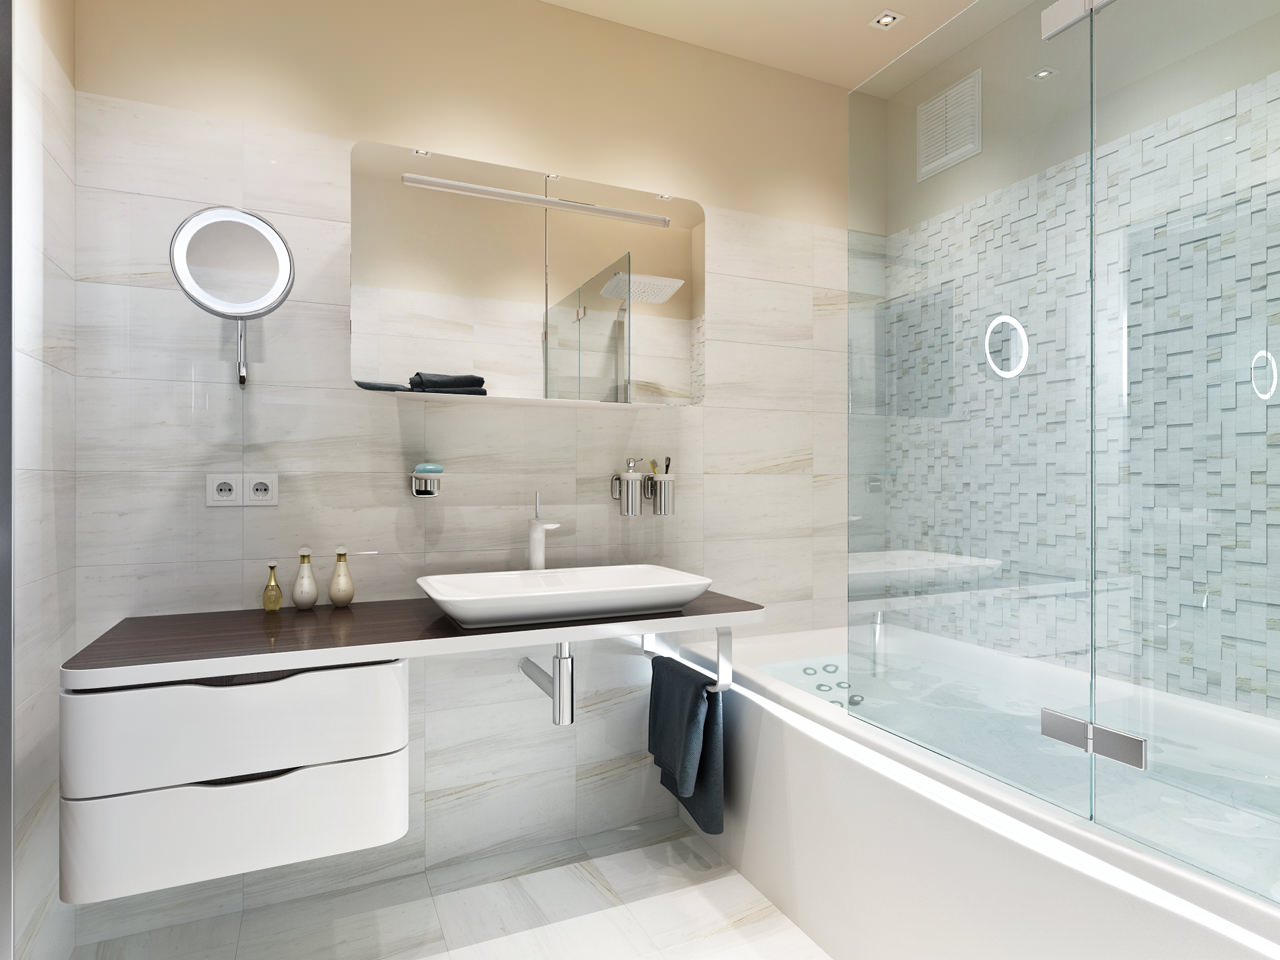 Фото ванной комнаты современный дизайн в квартире реальные